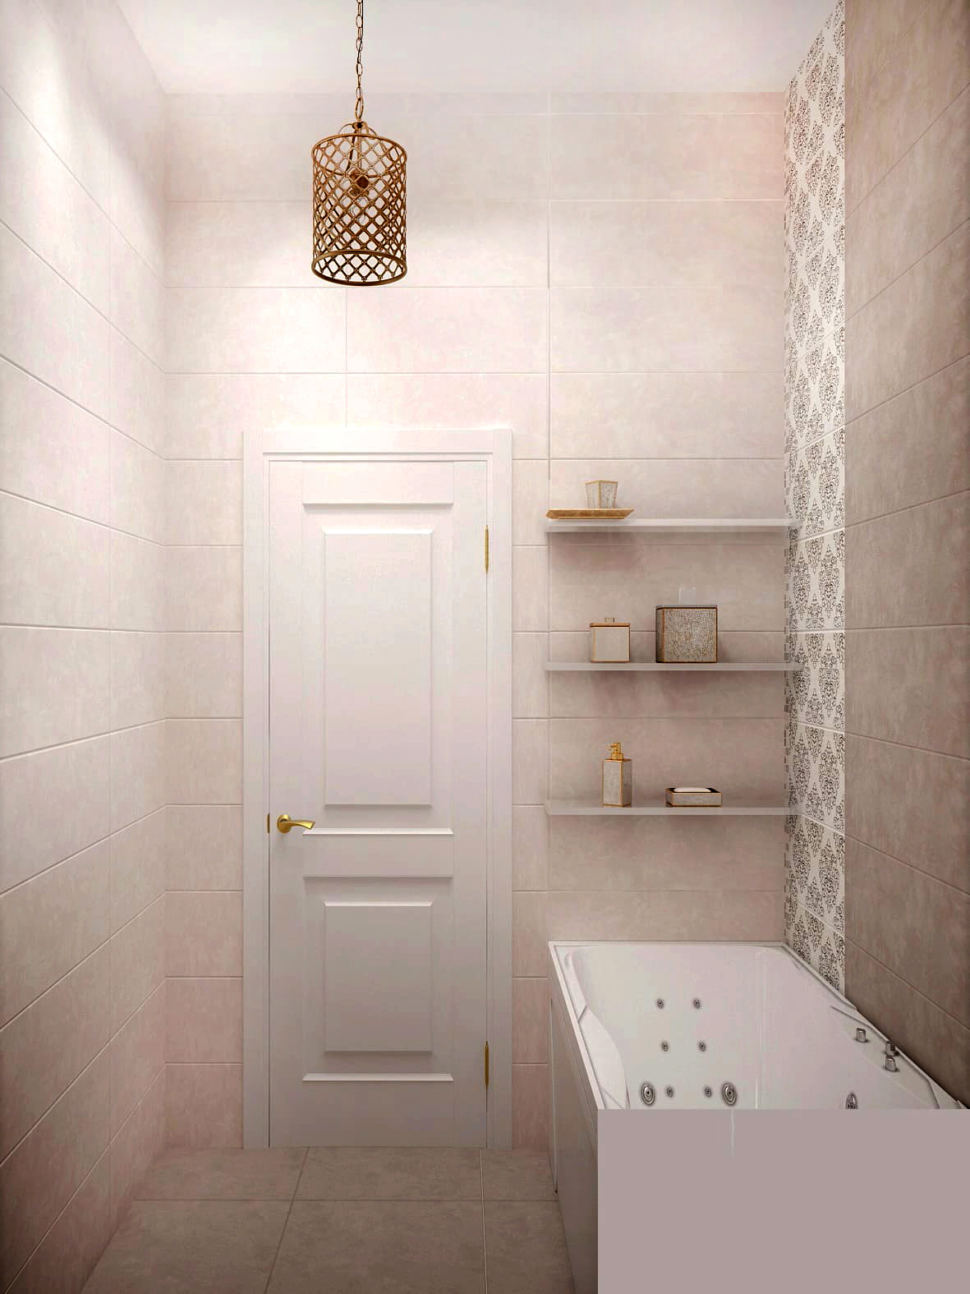 Интерьер ванной комнаты 3 кв.м в бежевых оттенках, белая ванна, тумба, плитка, подвесной светильник, зеркало